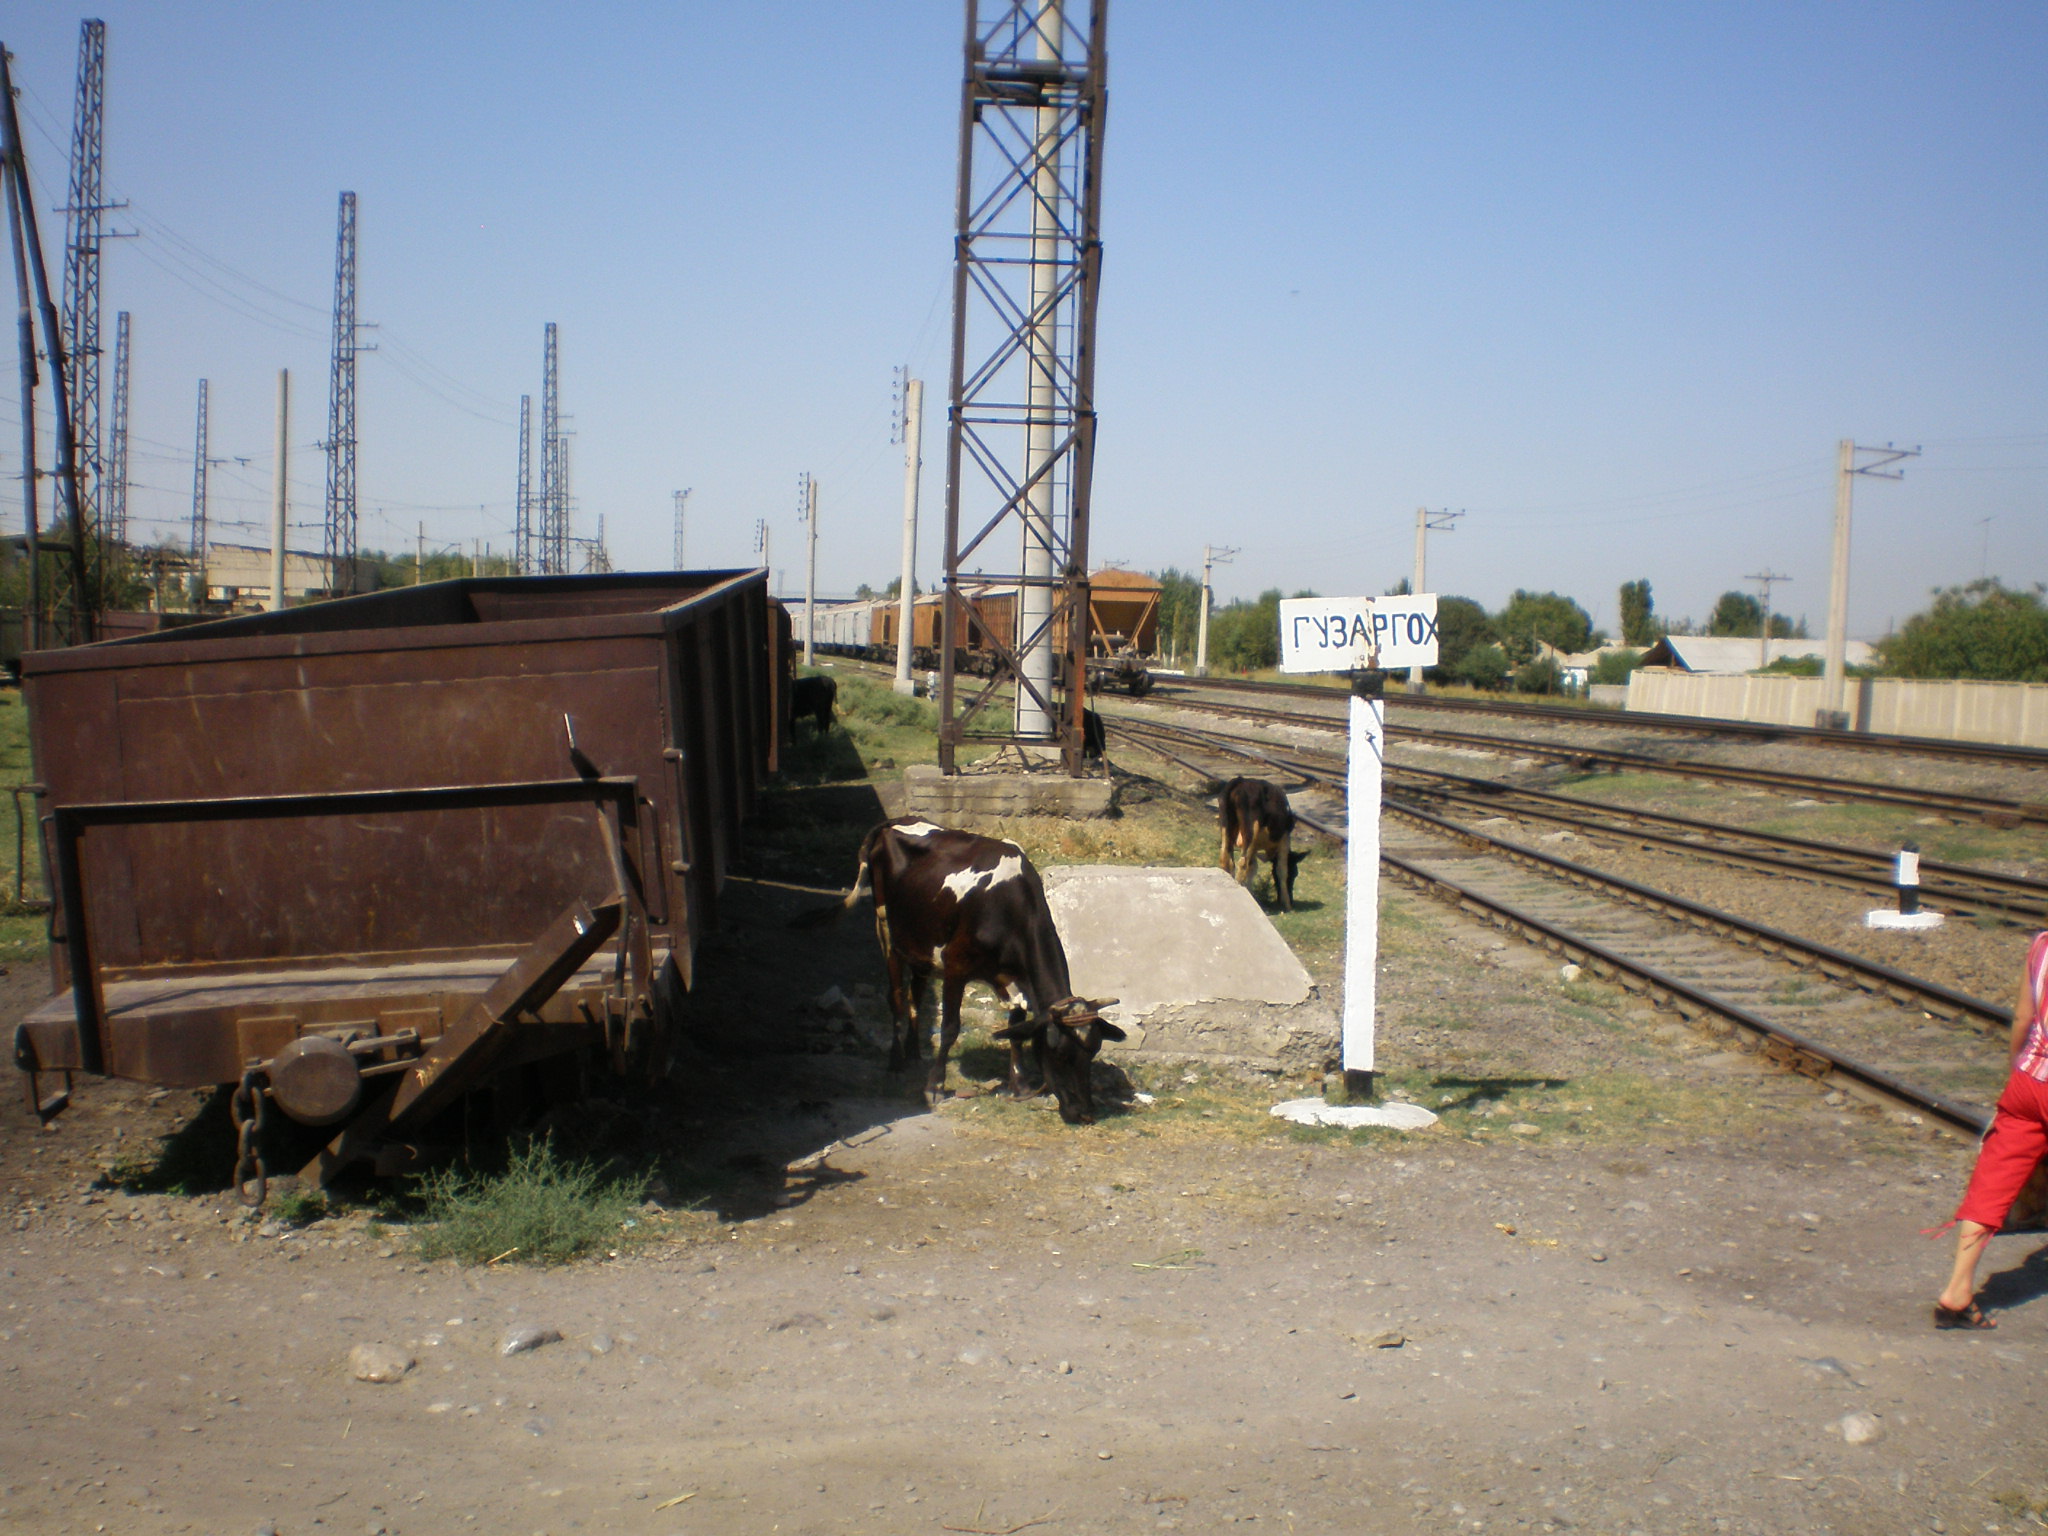 Сулюктинская узкоколейная железная дорога  —  фотографии, сделанные в 2008 году (часть 4)